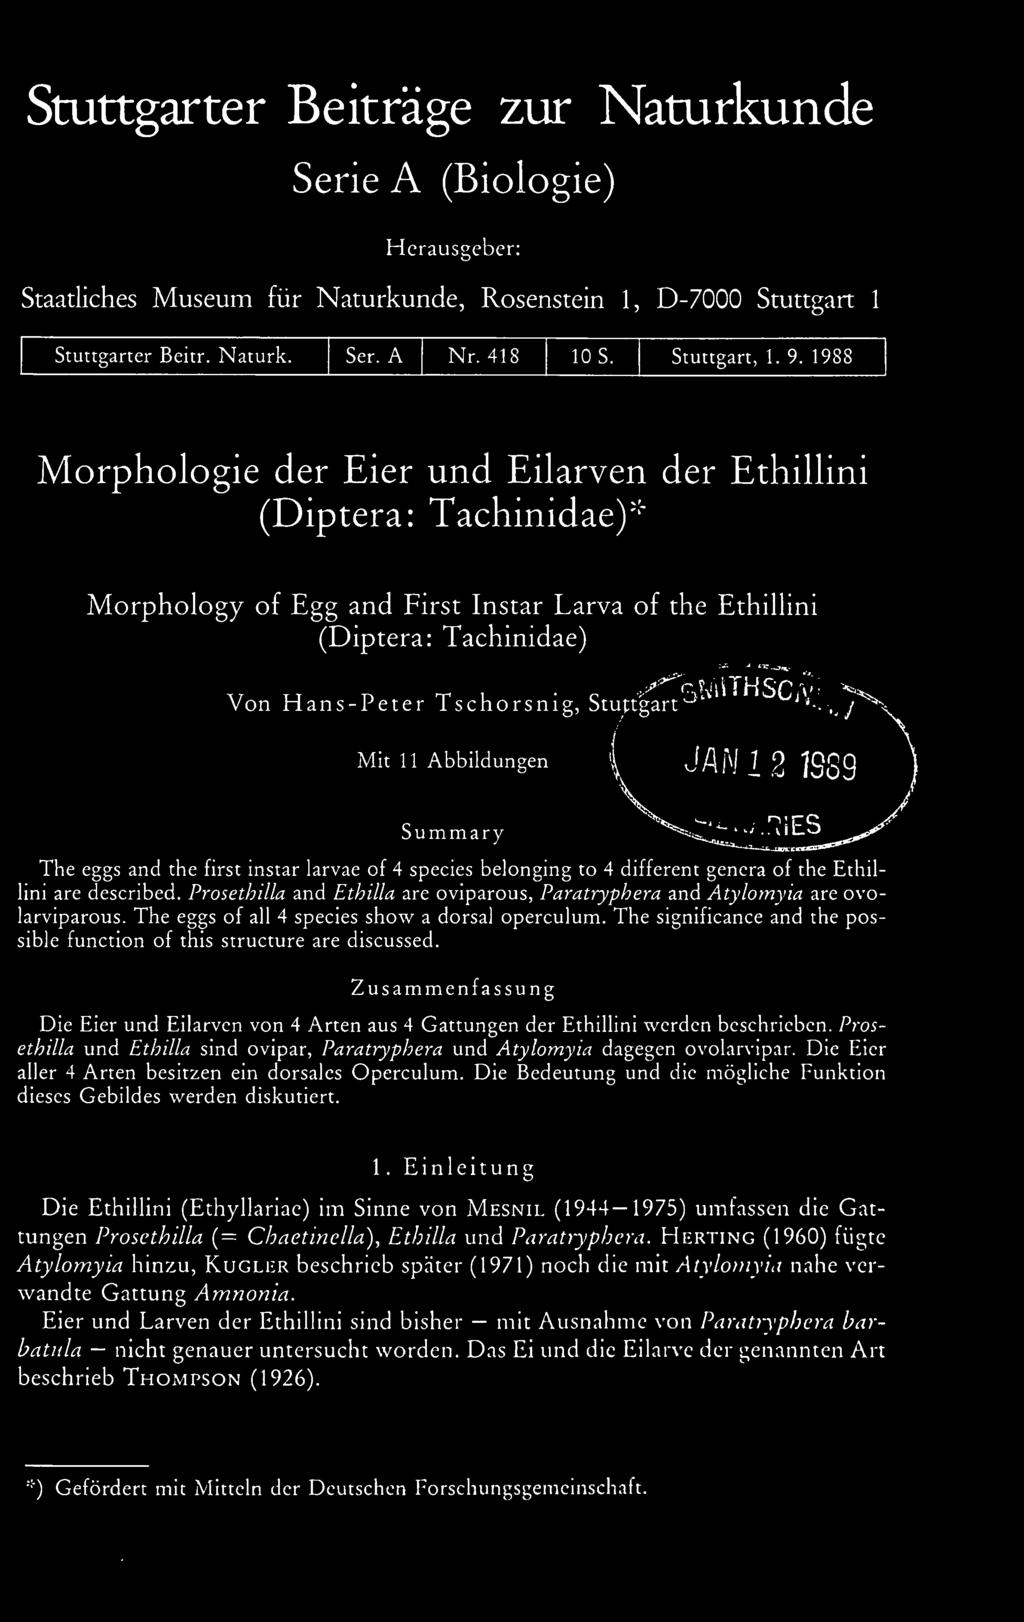 The significancc and the possible function of this structure are discussed. Zusammenfassung Die Eier und Eilarven von 4 Arten aus 4 Gattungen der Ethillini werden beschrieben.